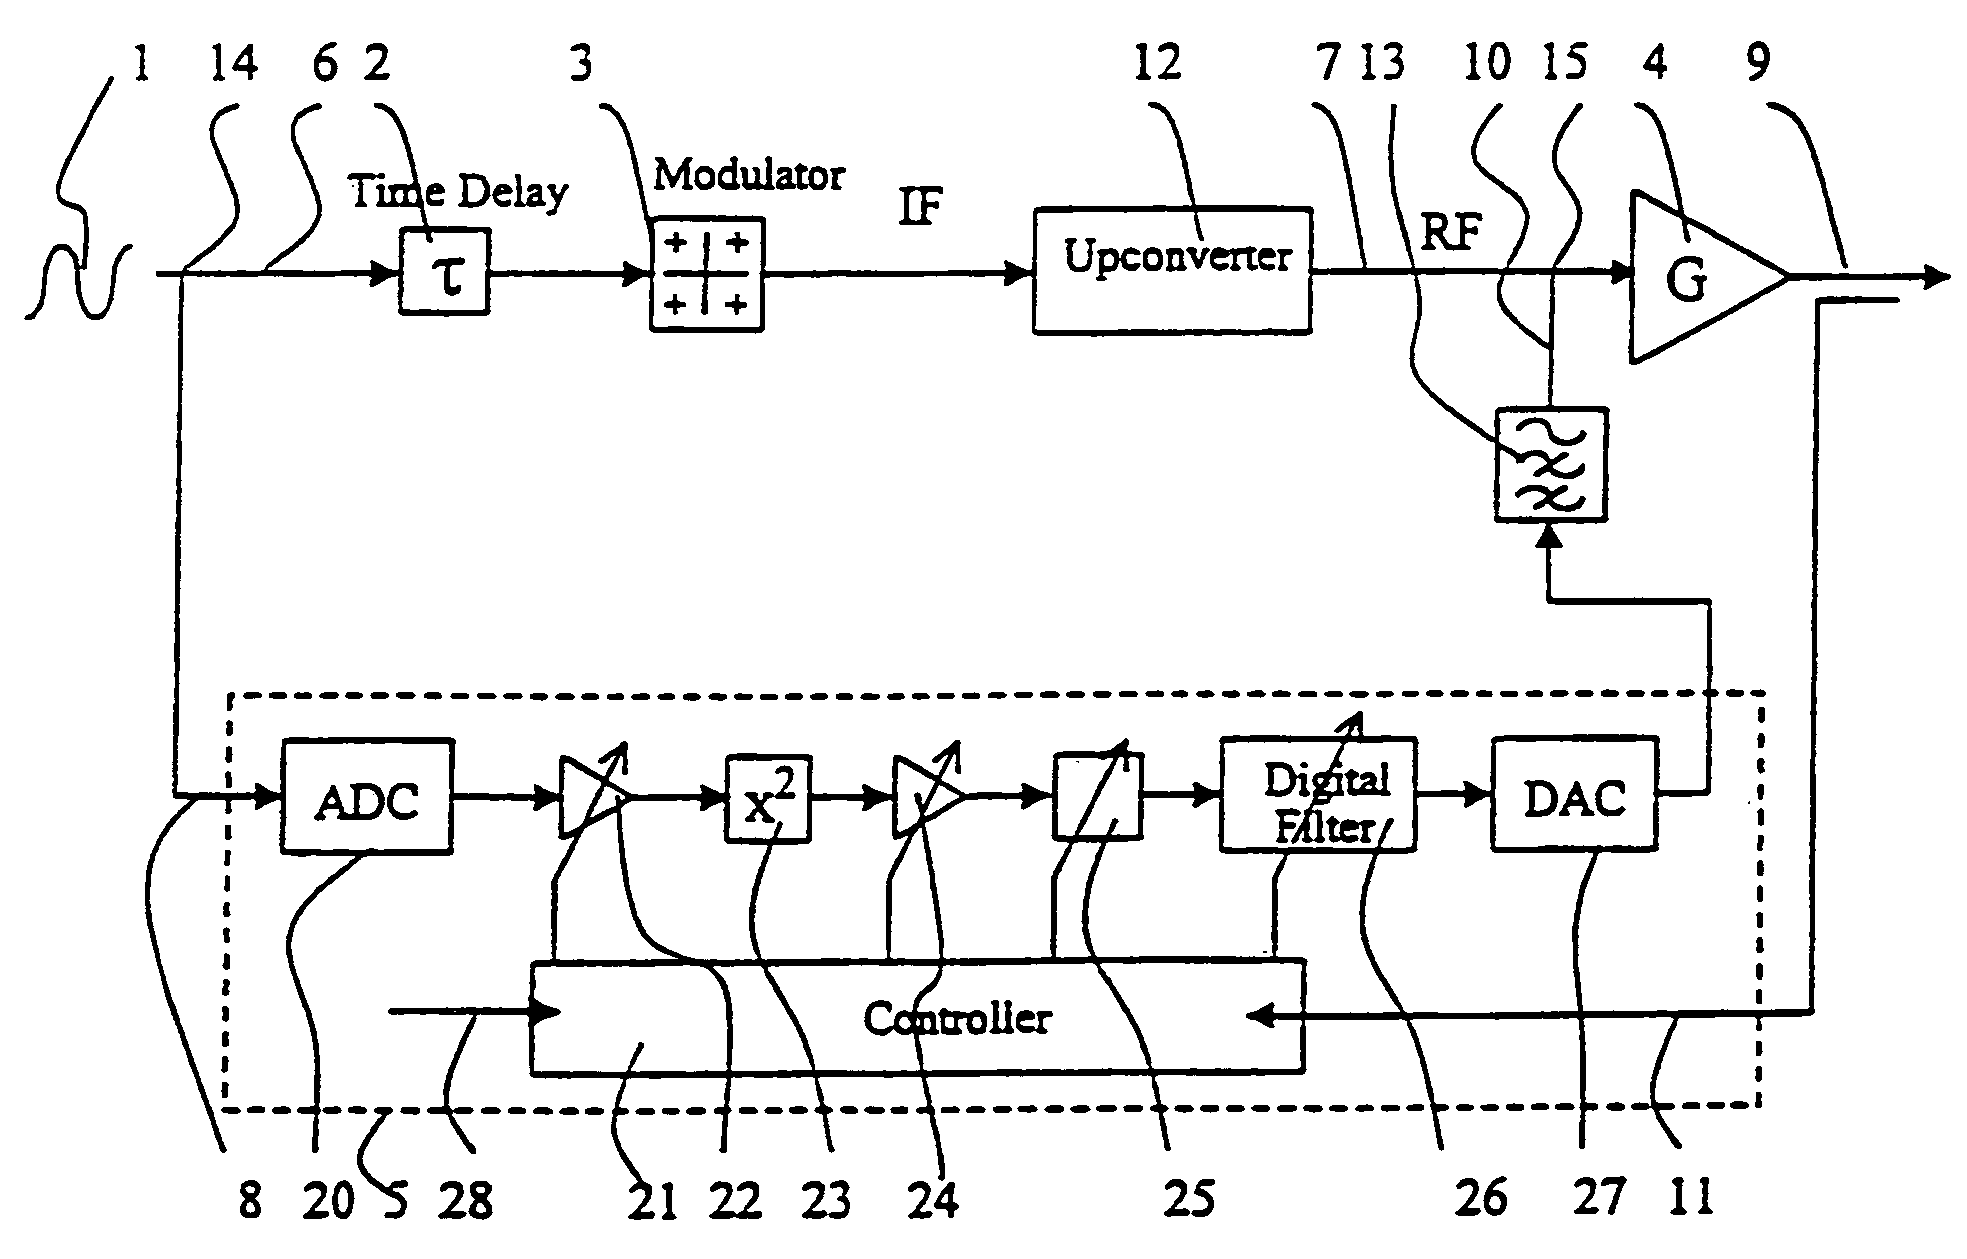 Linearization of an amplifier